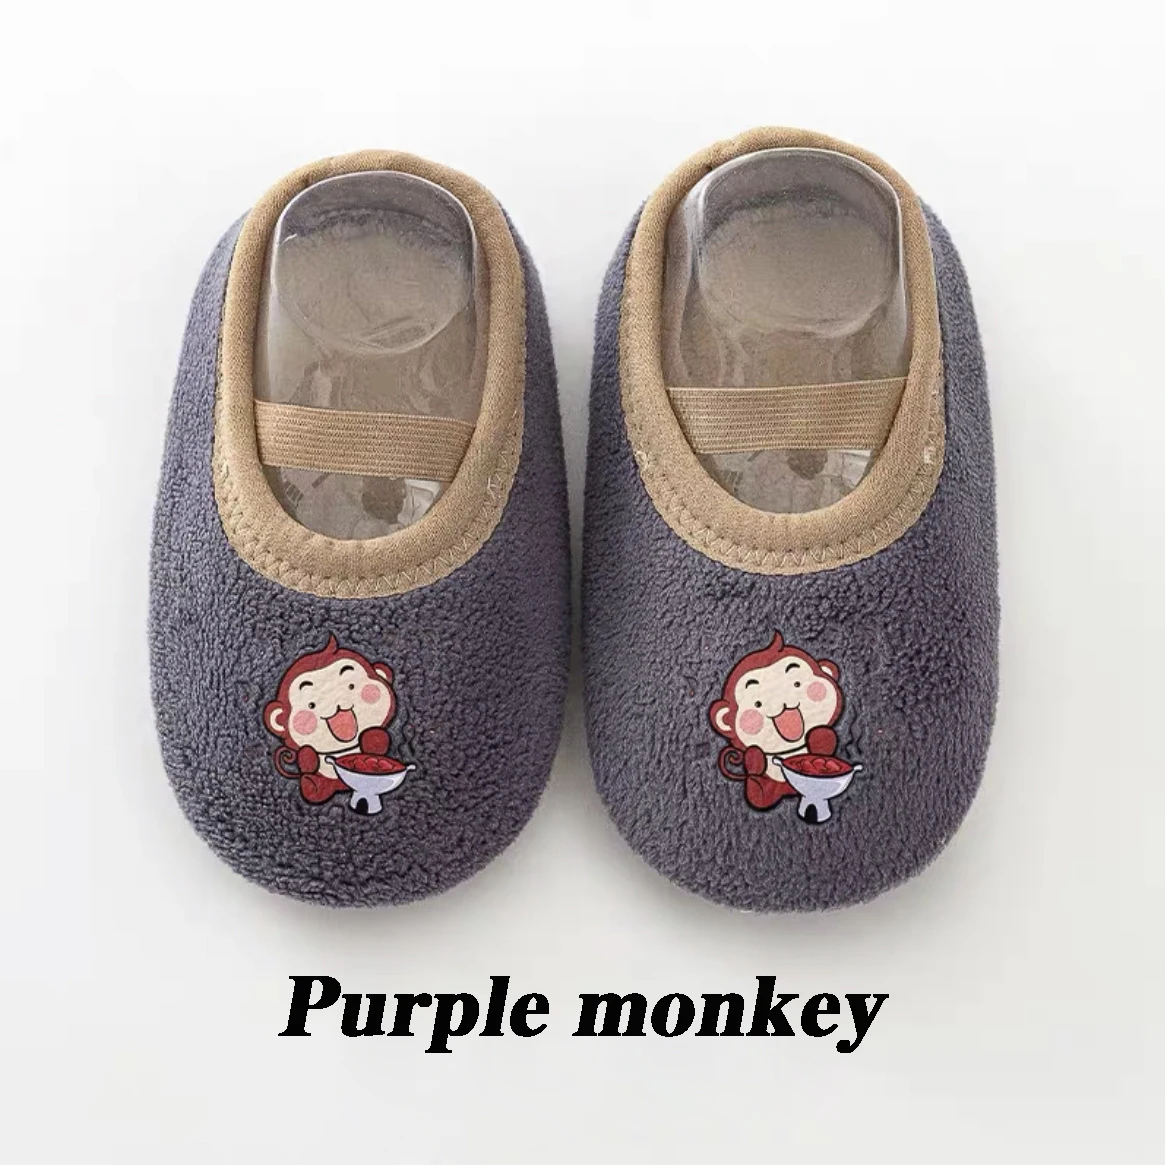 Purple monkey